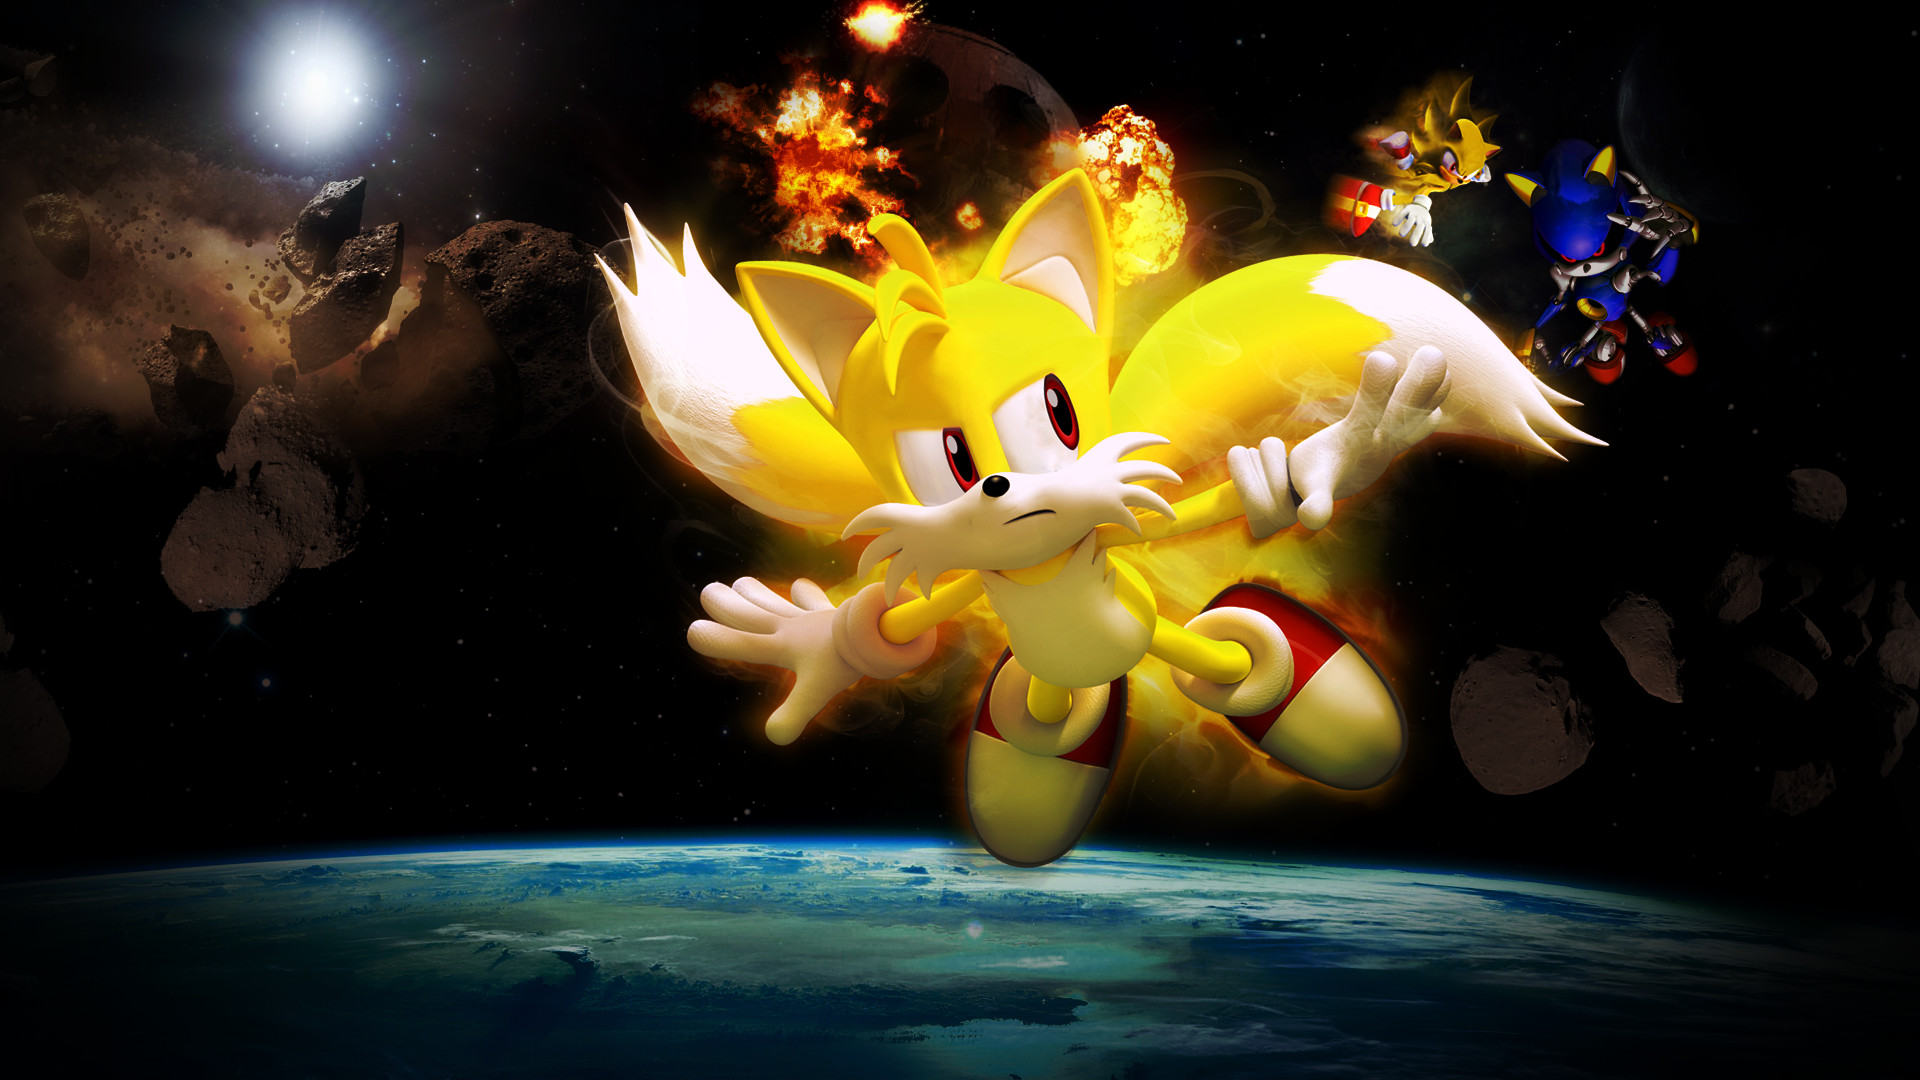 1920x1080 ... Sonic 4 Episode 2 Final Battle by darkfailure